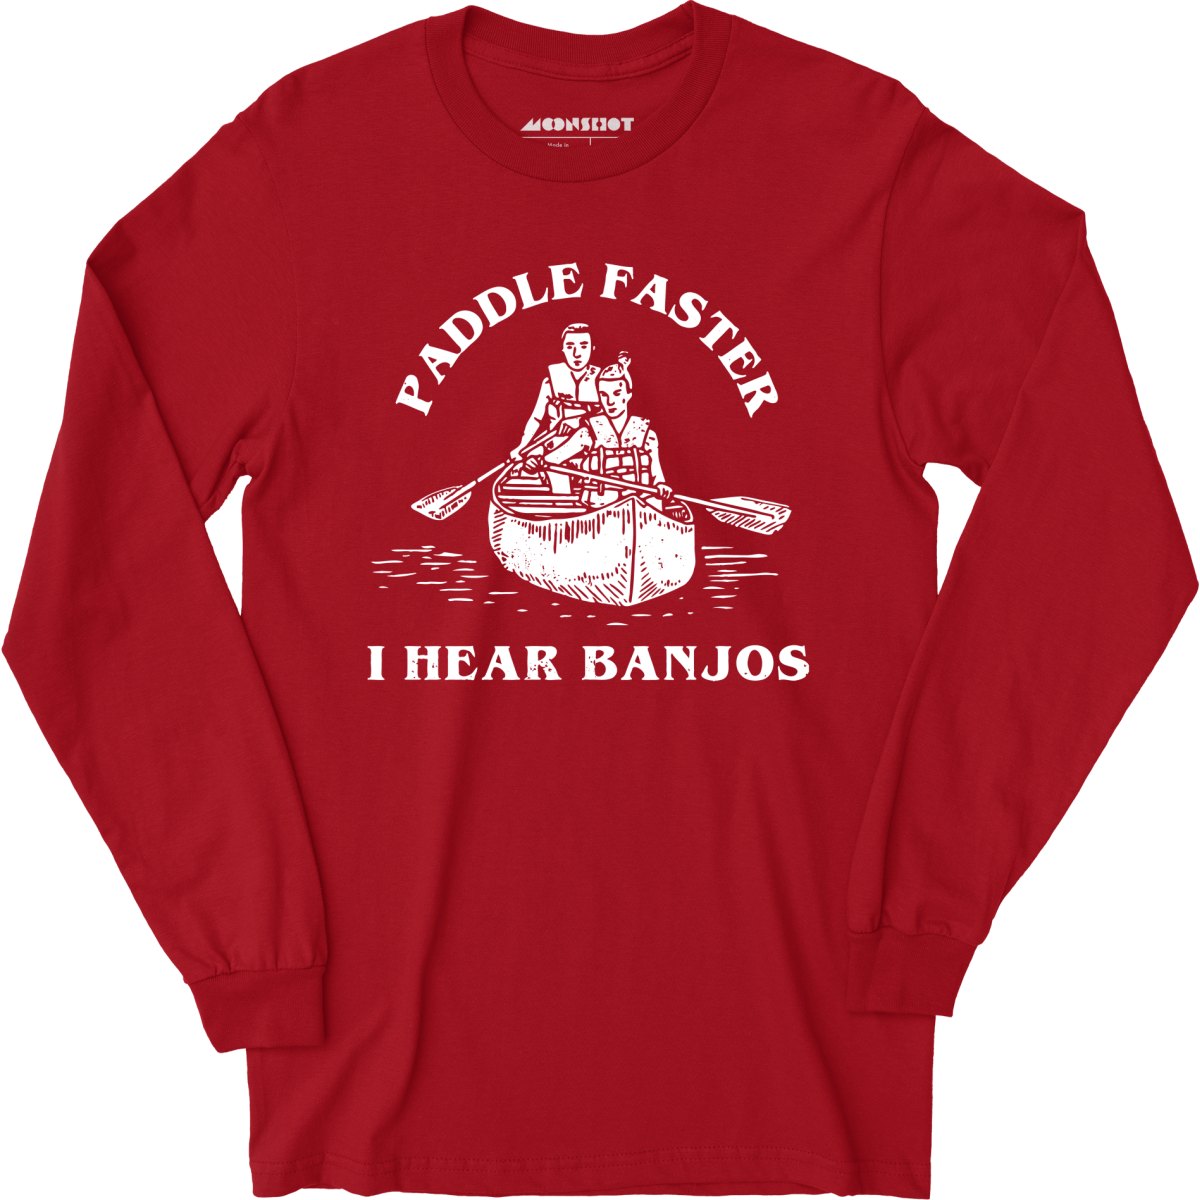 Paddle Faster I Hear Banjos - Long Sleeve T-Shirt